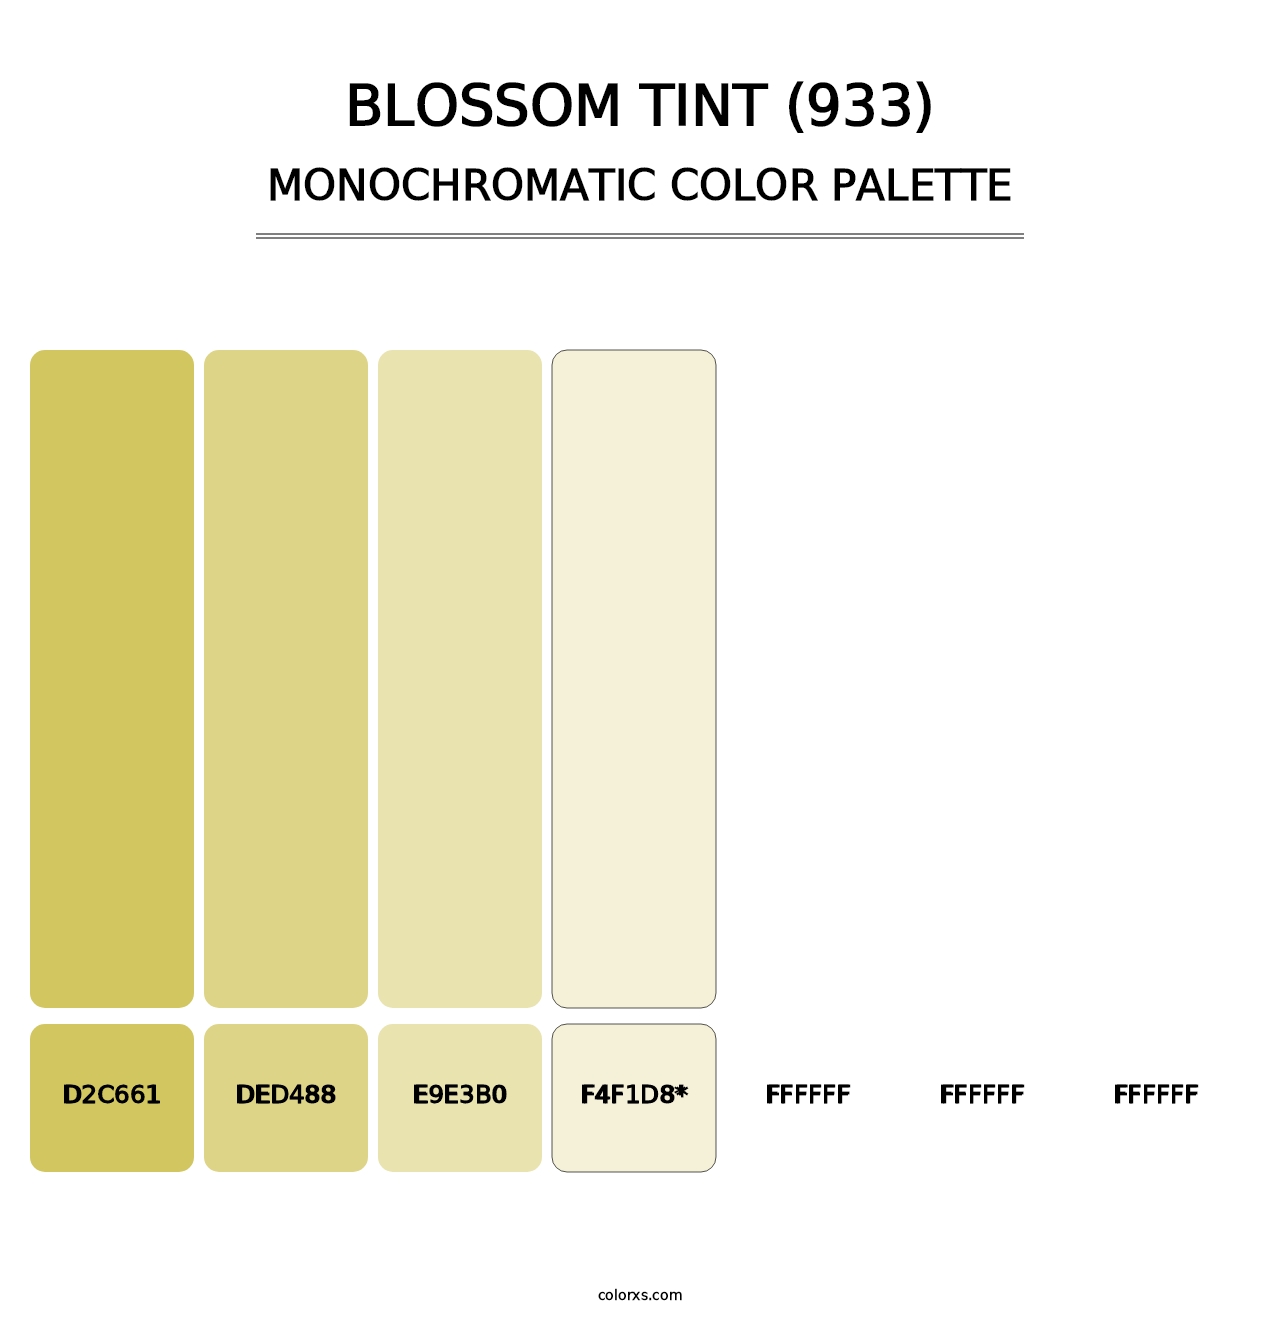 Blossom Tint (933) - Monochromatic Color Palette